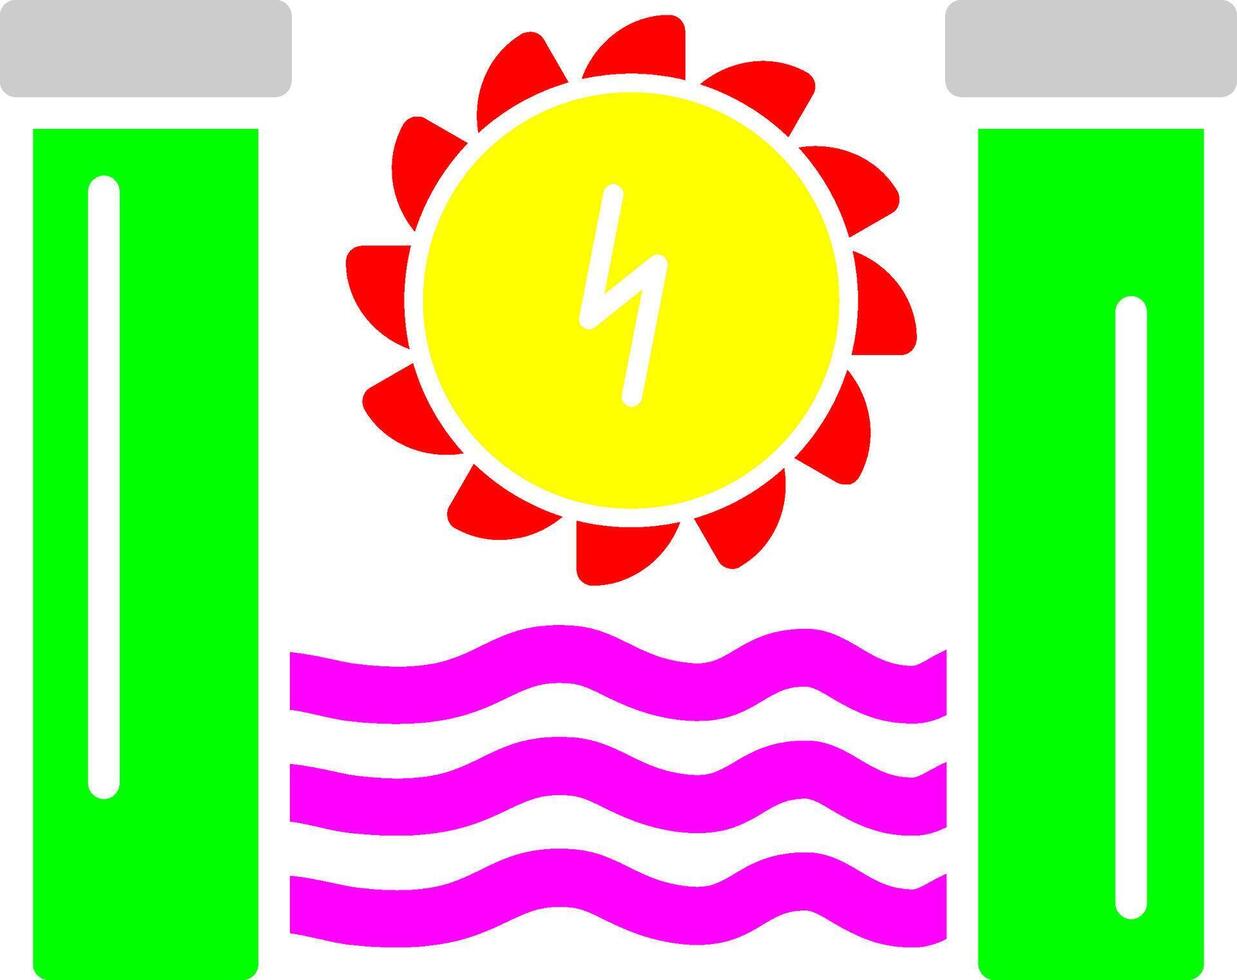 Hydro Power Vector Icon